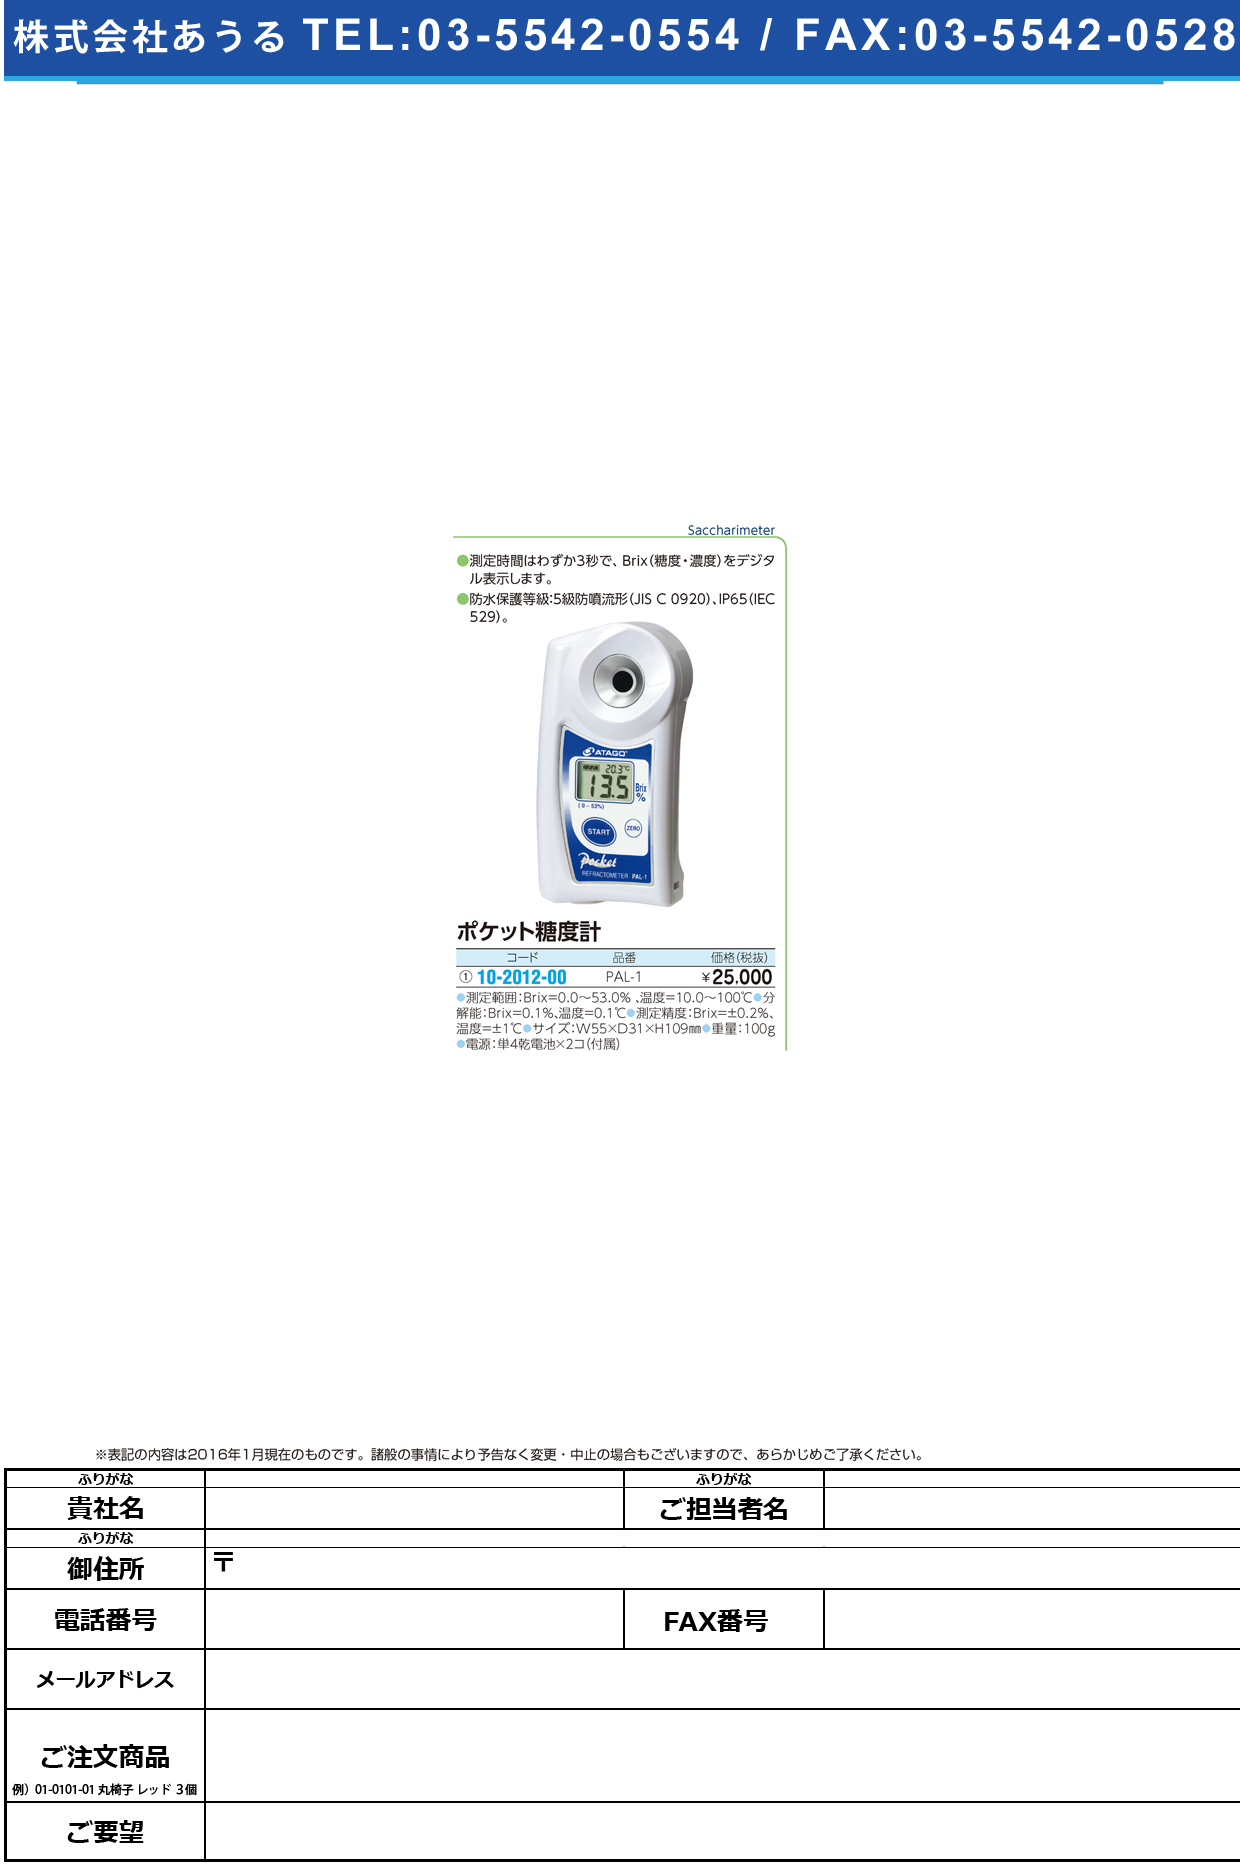 (10-2012-00)ポケット糖度計 ﾎﾟｹｯﾄﾄｳﾄﾞｹｲ PAL-1【1台単位】【2016年カタログ商品】